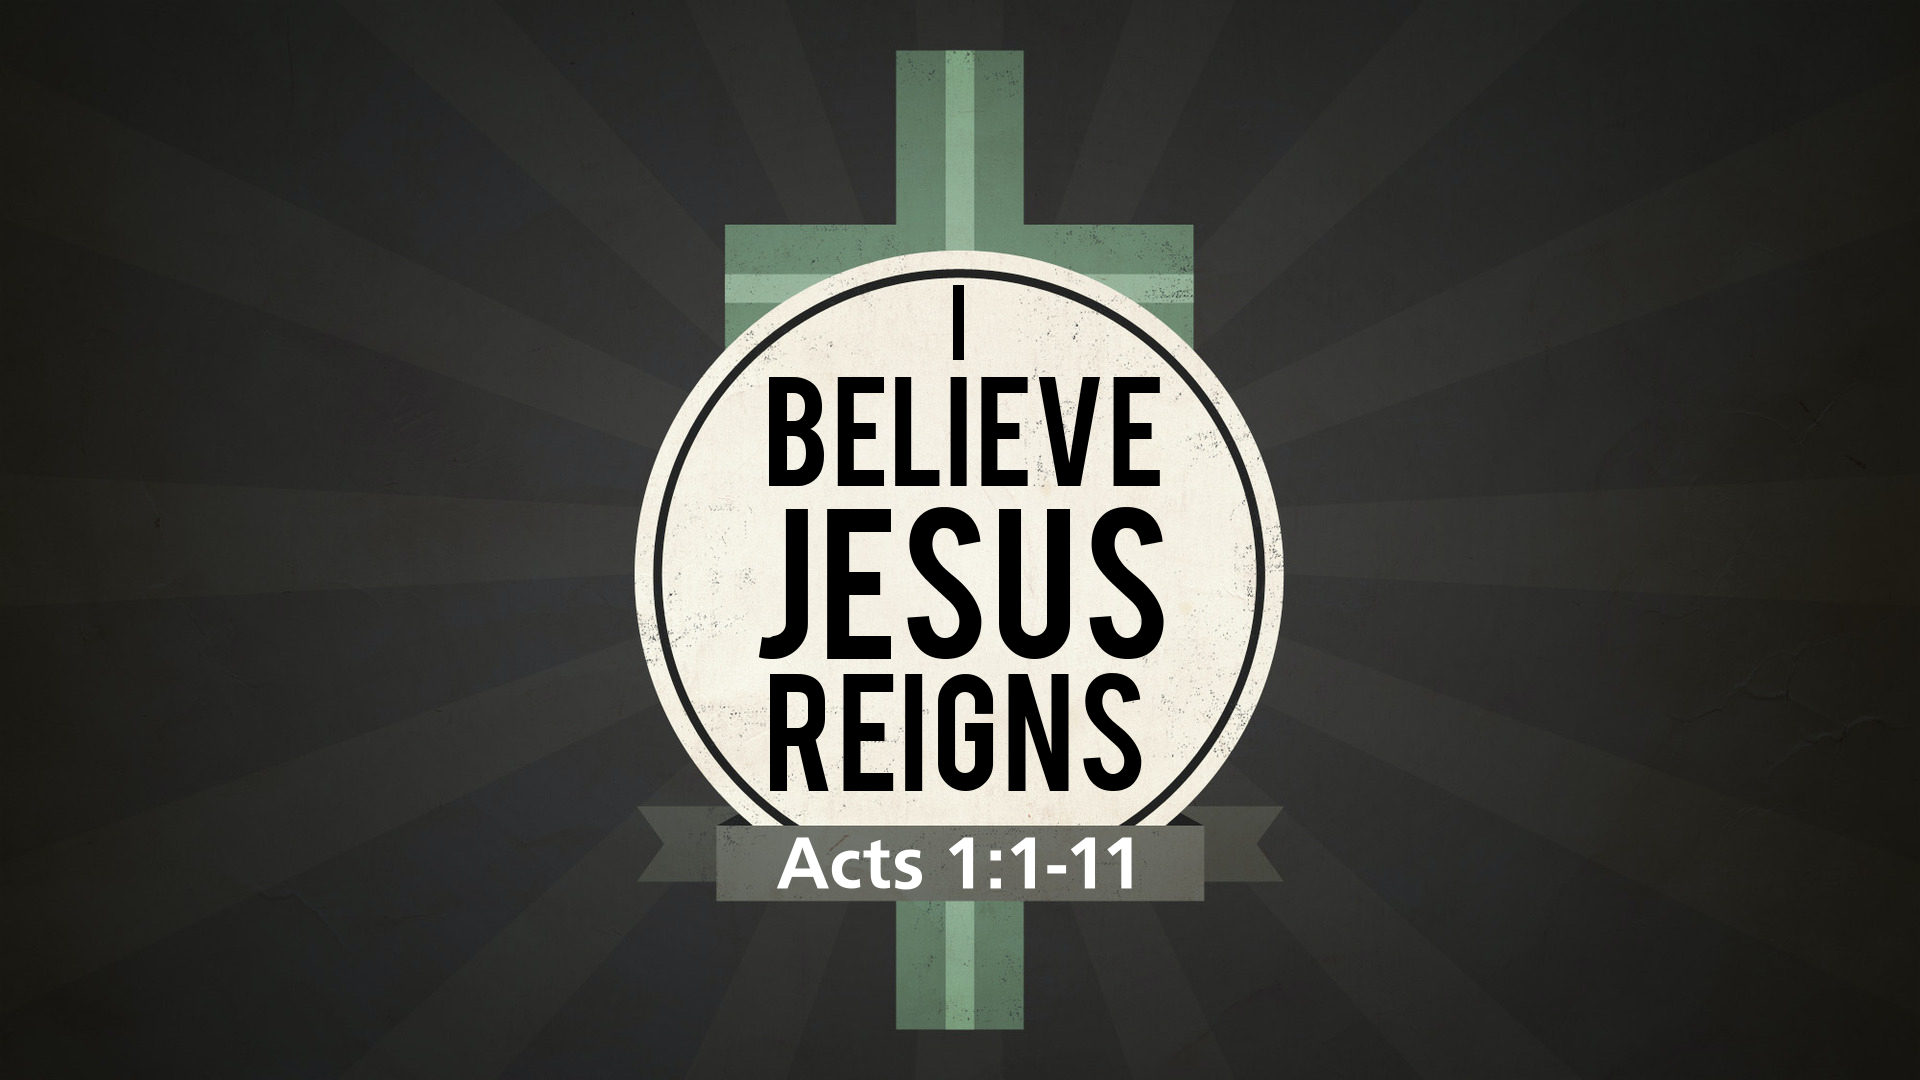 “I Believe Jesus Reigns”